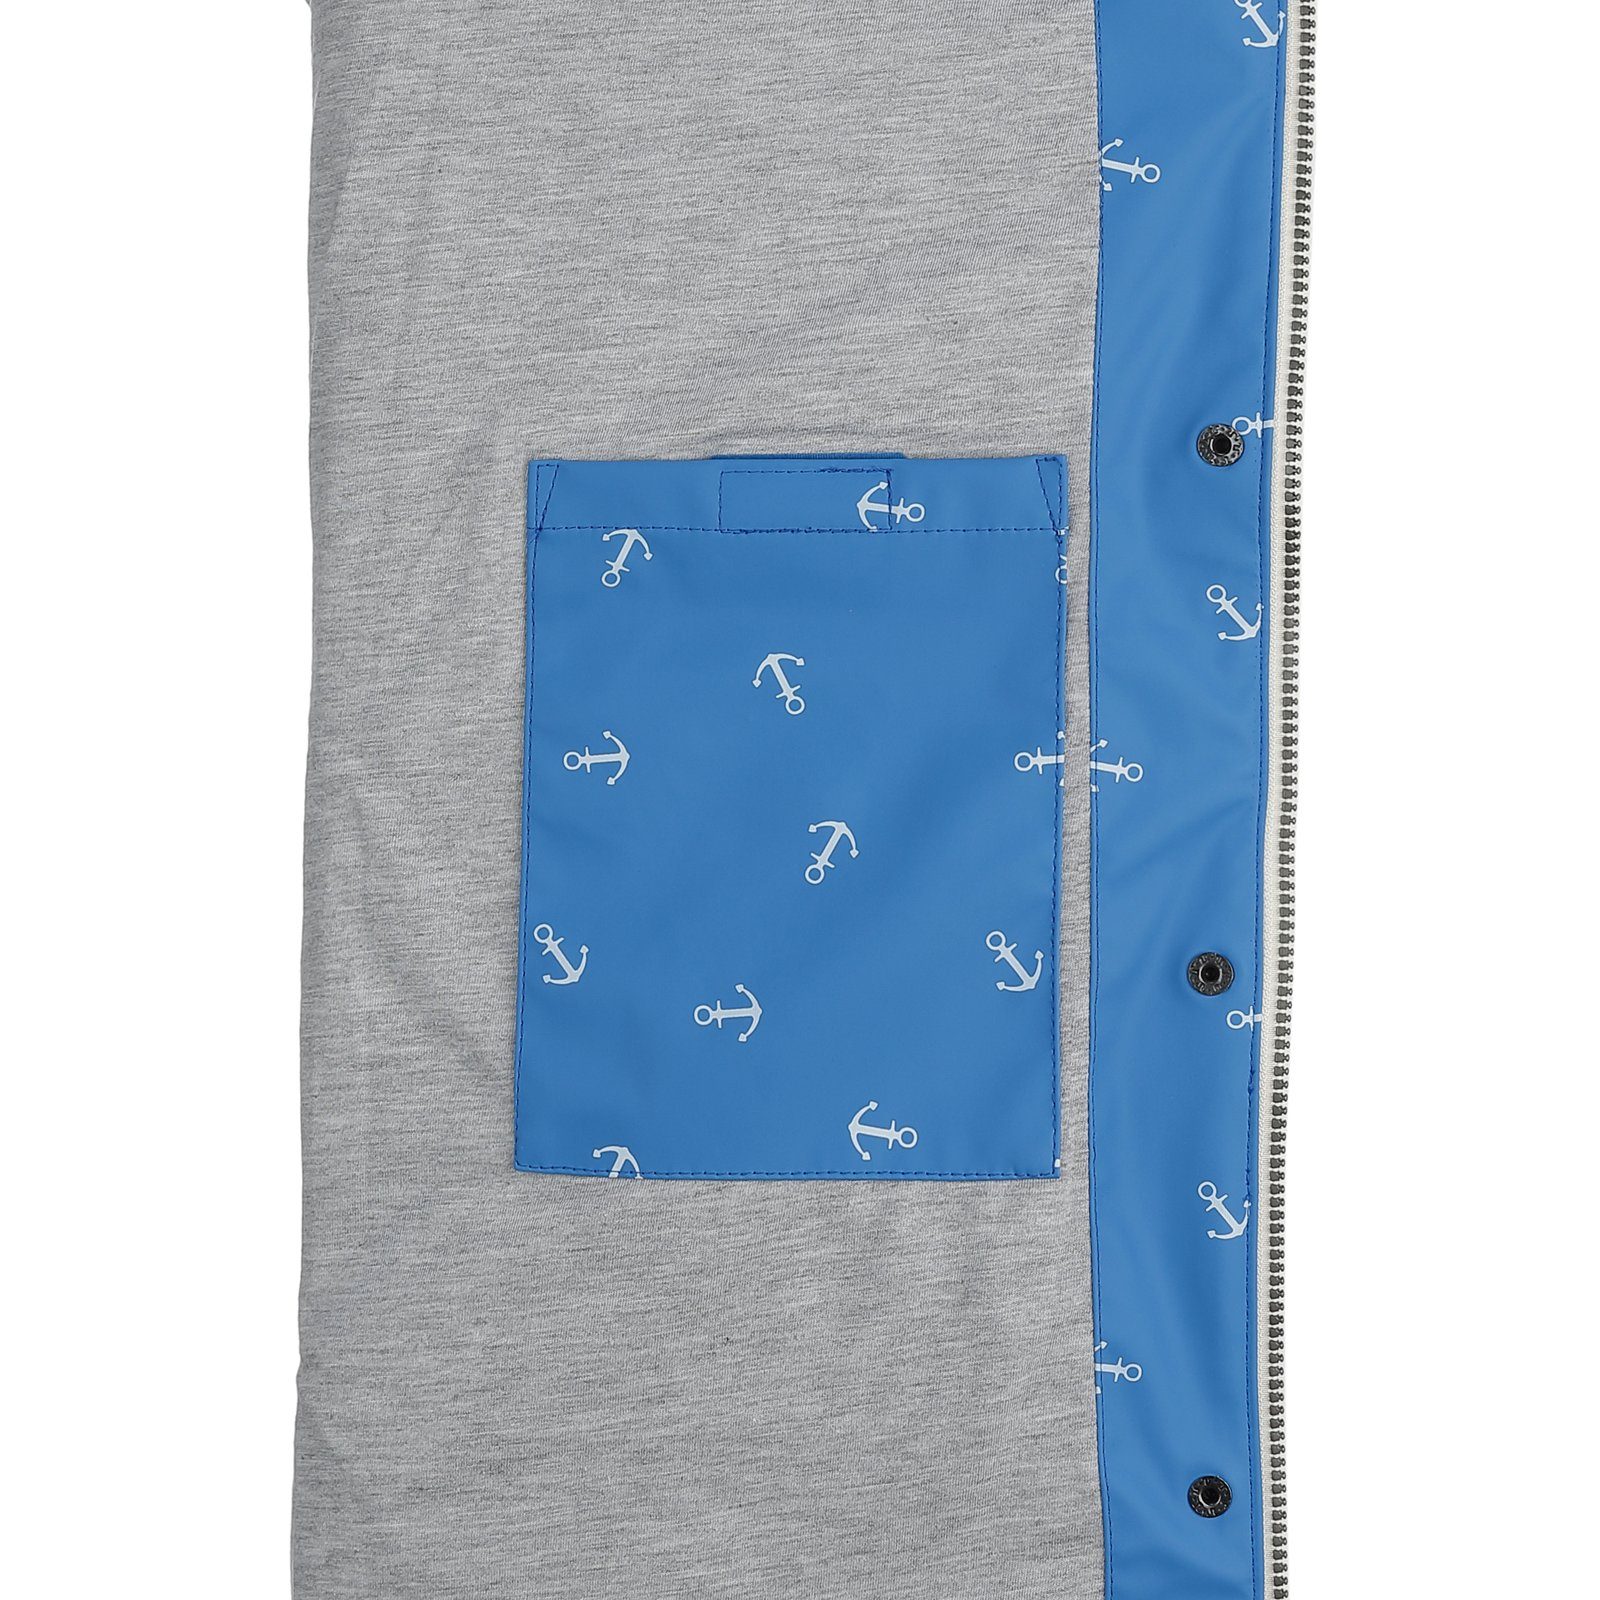 Regenmantel Fashion Cuxhaven mit wasserdicht Dry Jacke Anker-Print - hellblau Regenjacke Damen Kapuze